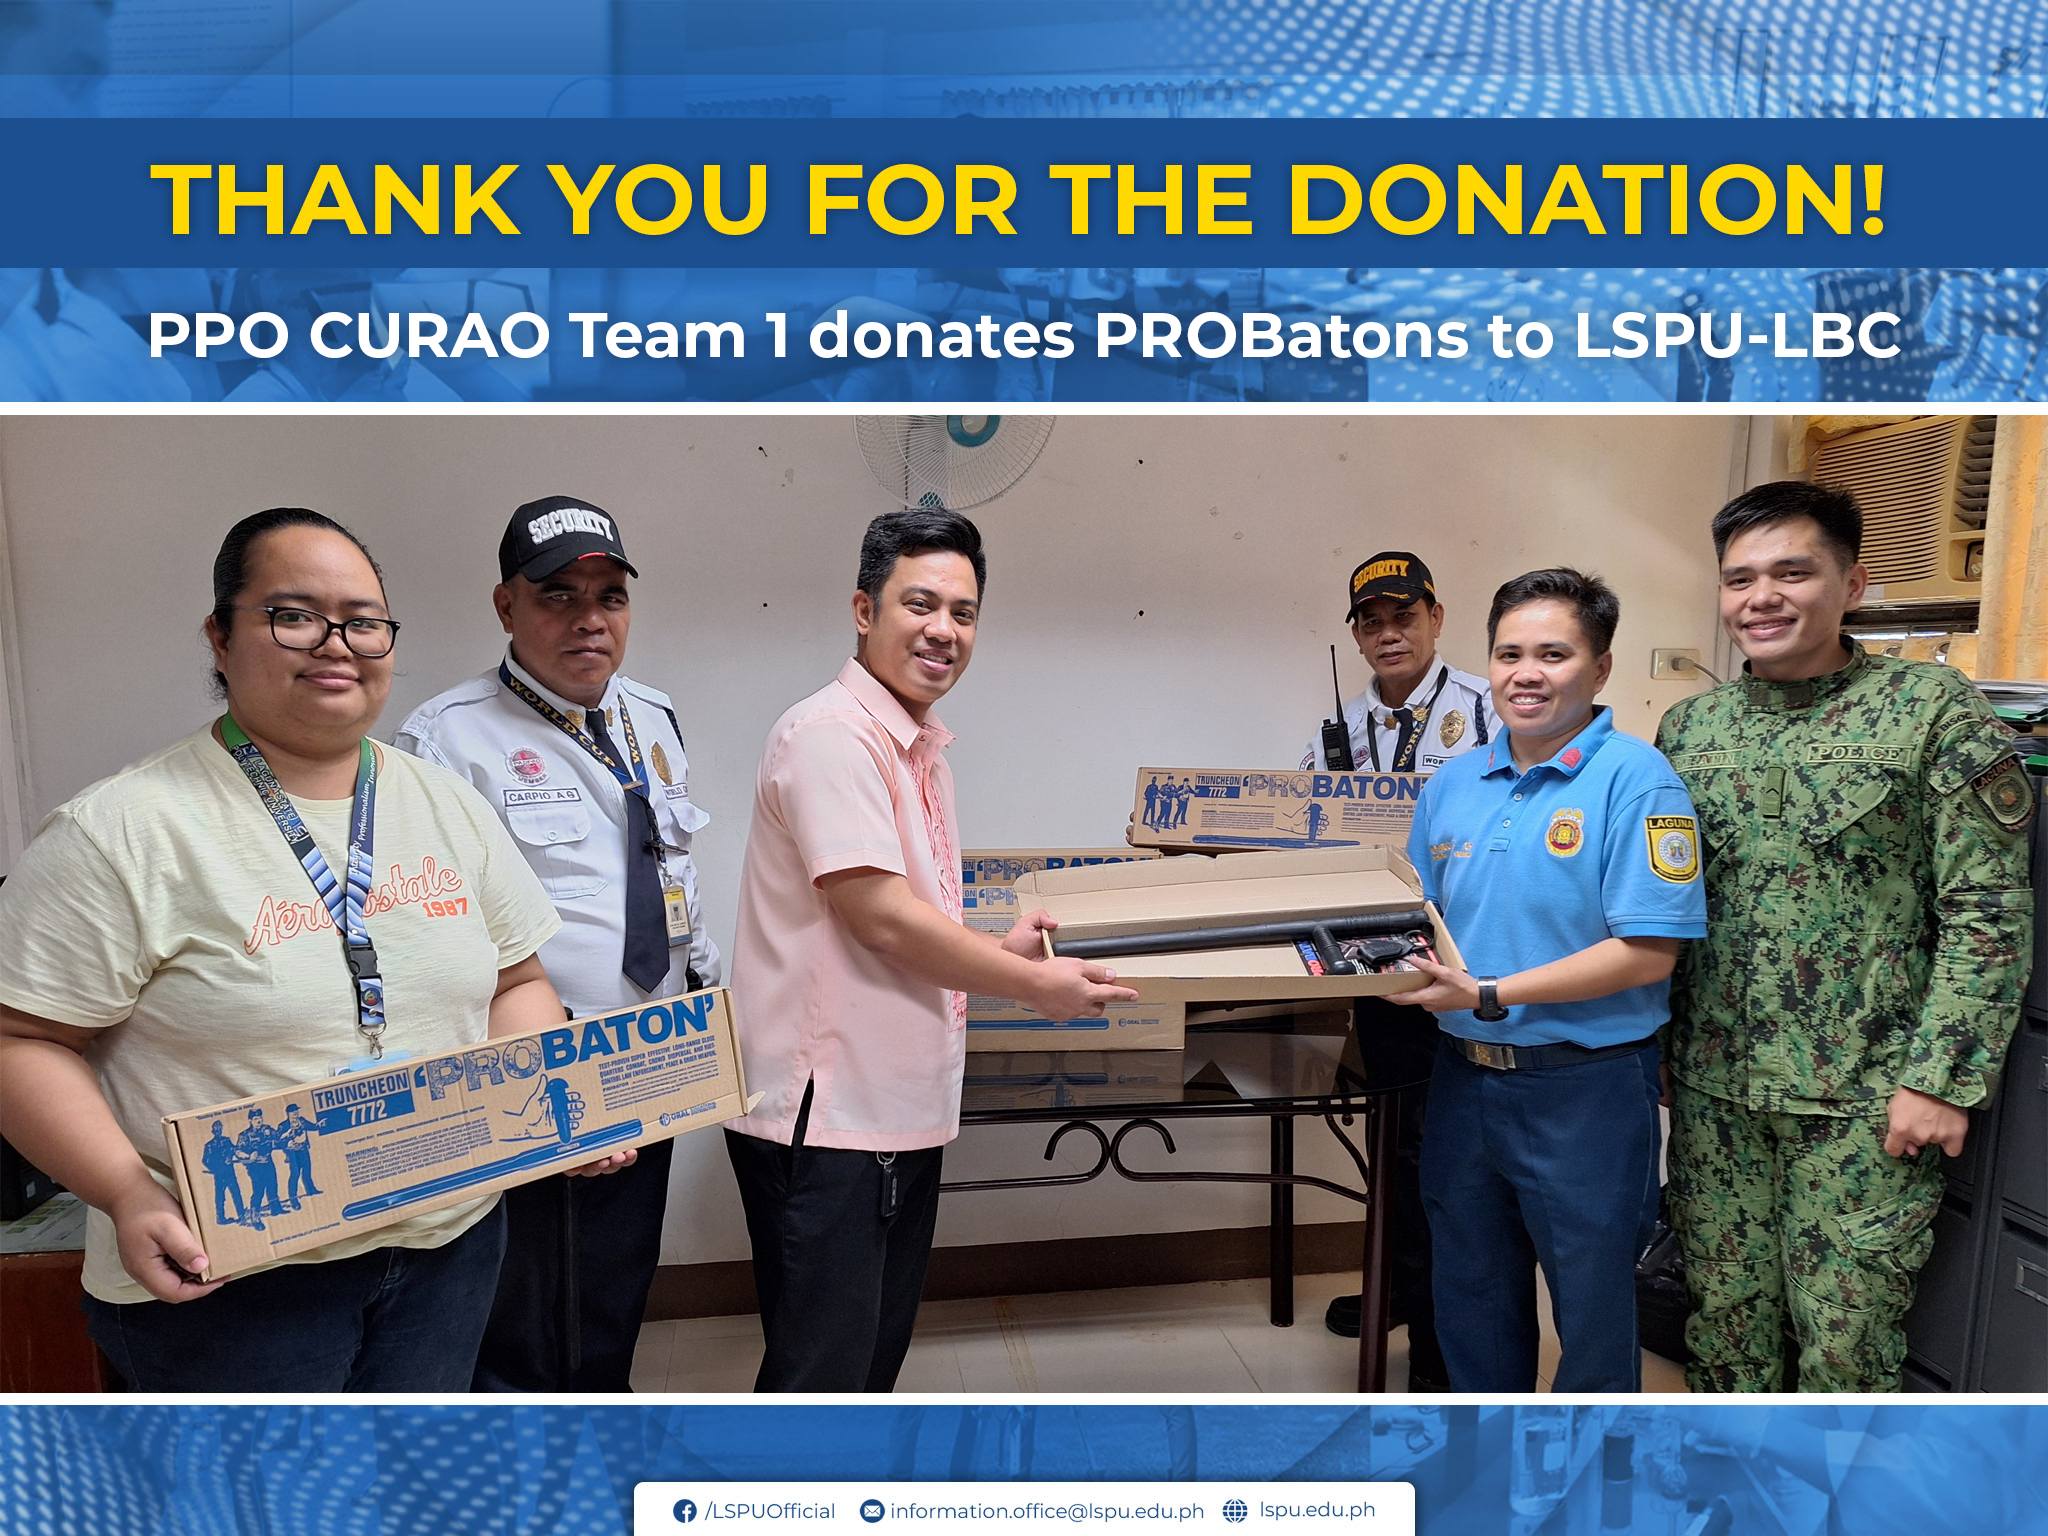 LPPO CURAO Team 1 donates PROBatons to LSPU-LBC